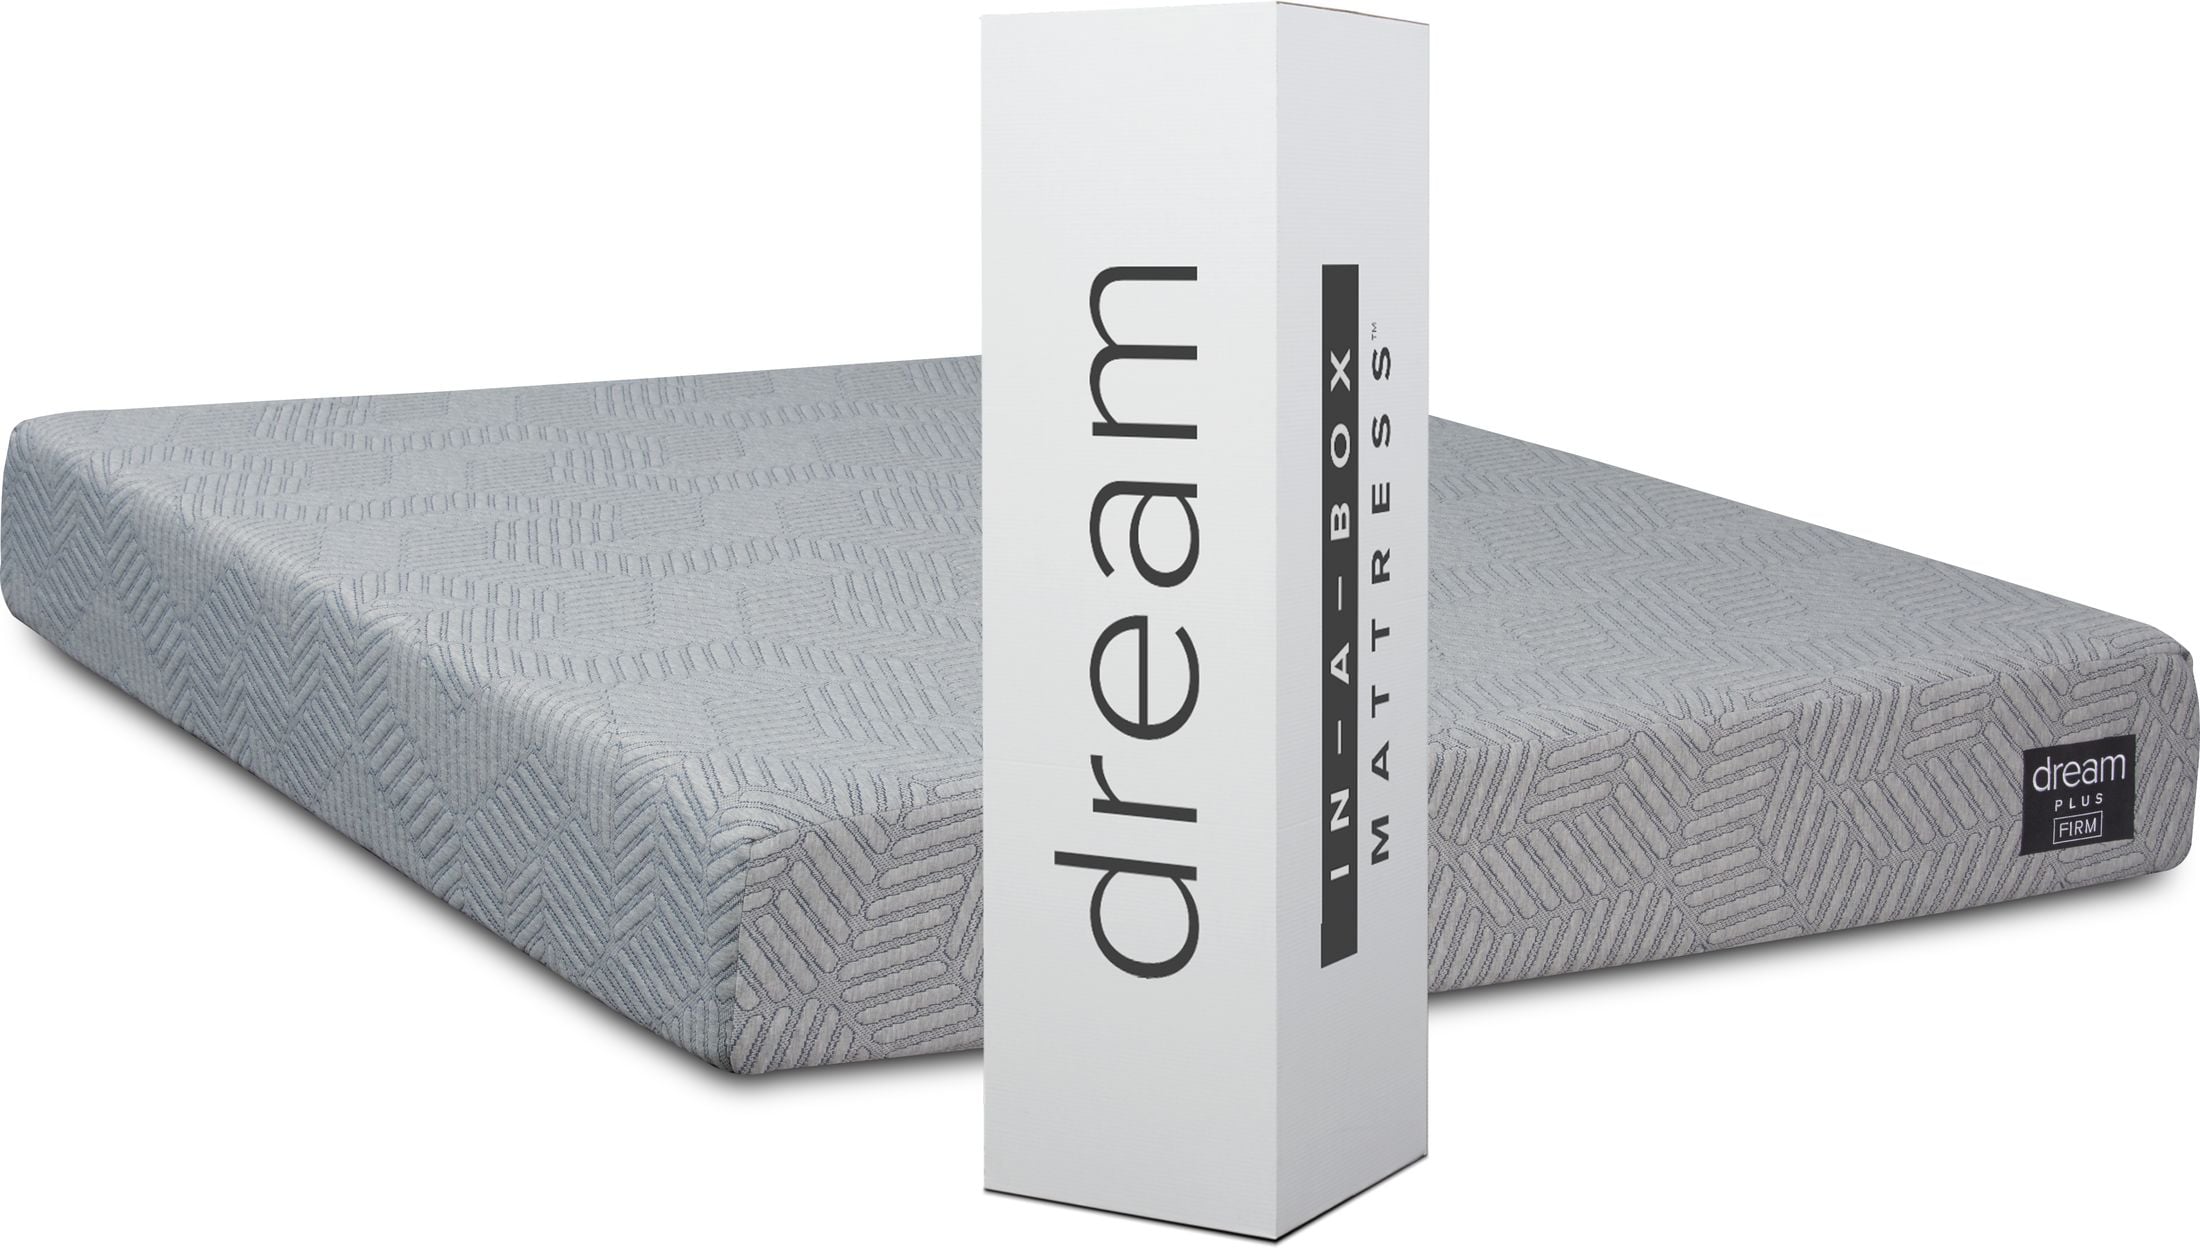 dream--in a box mattress